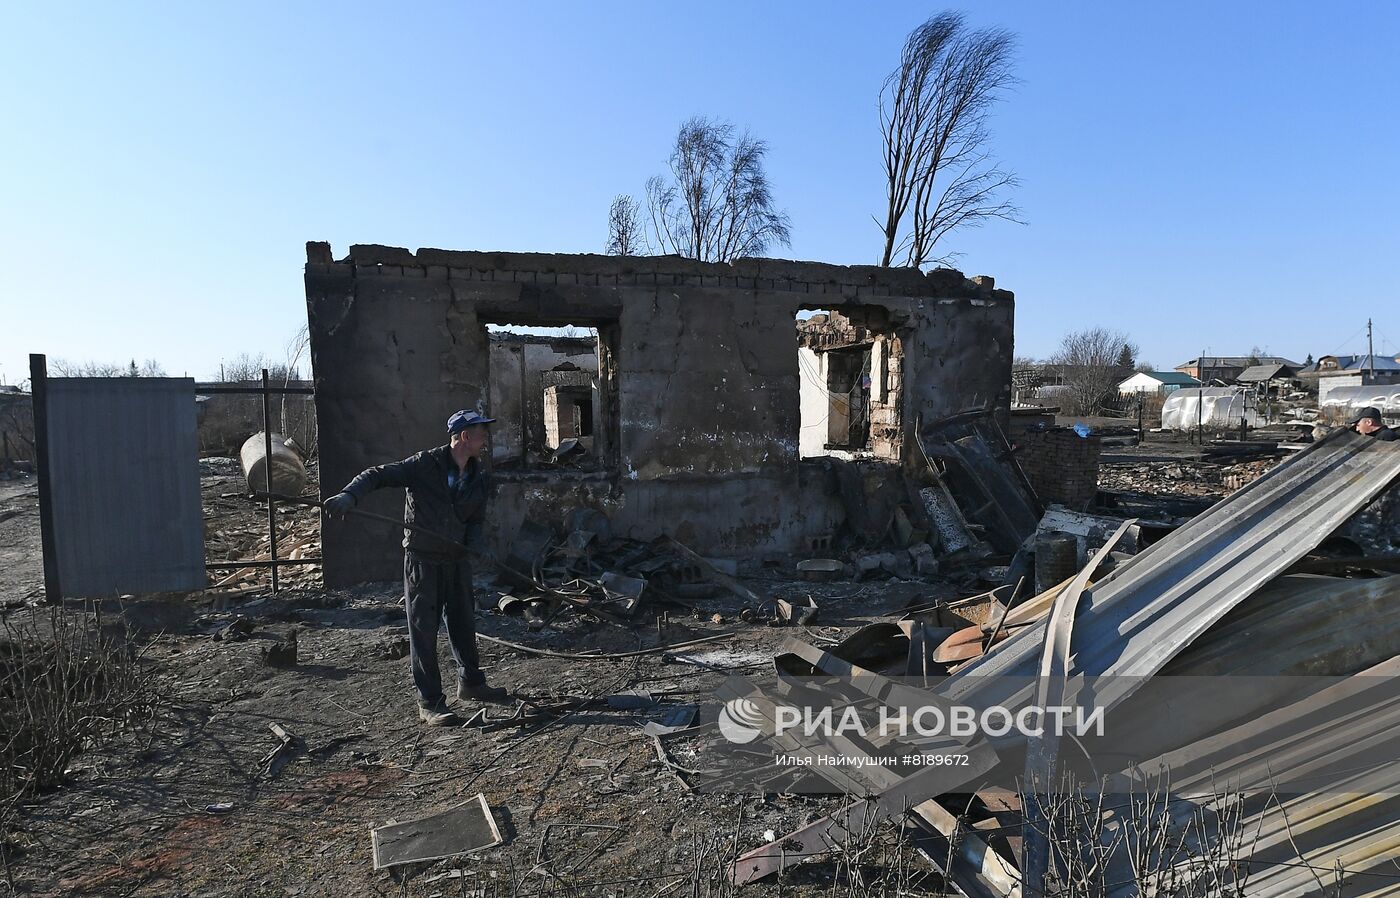 Последствия природных пожаров в Красноярском крае